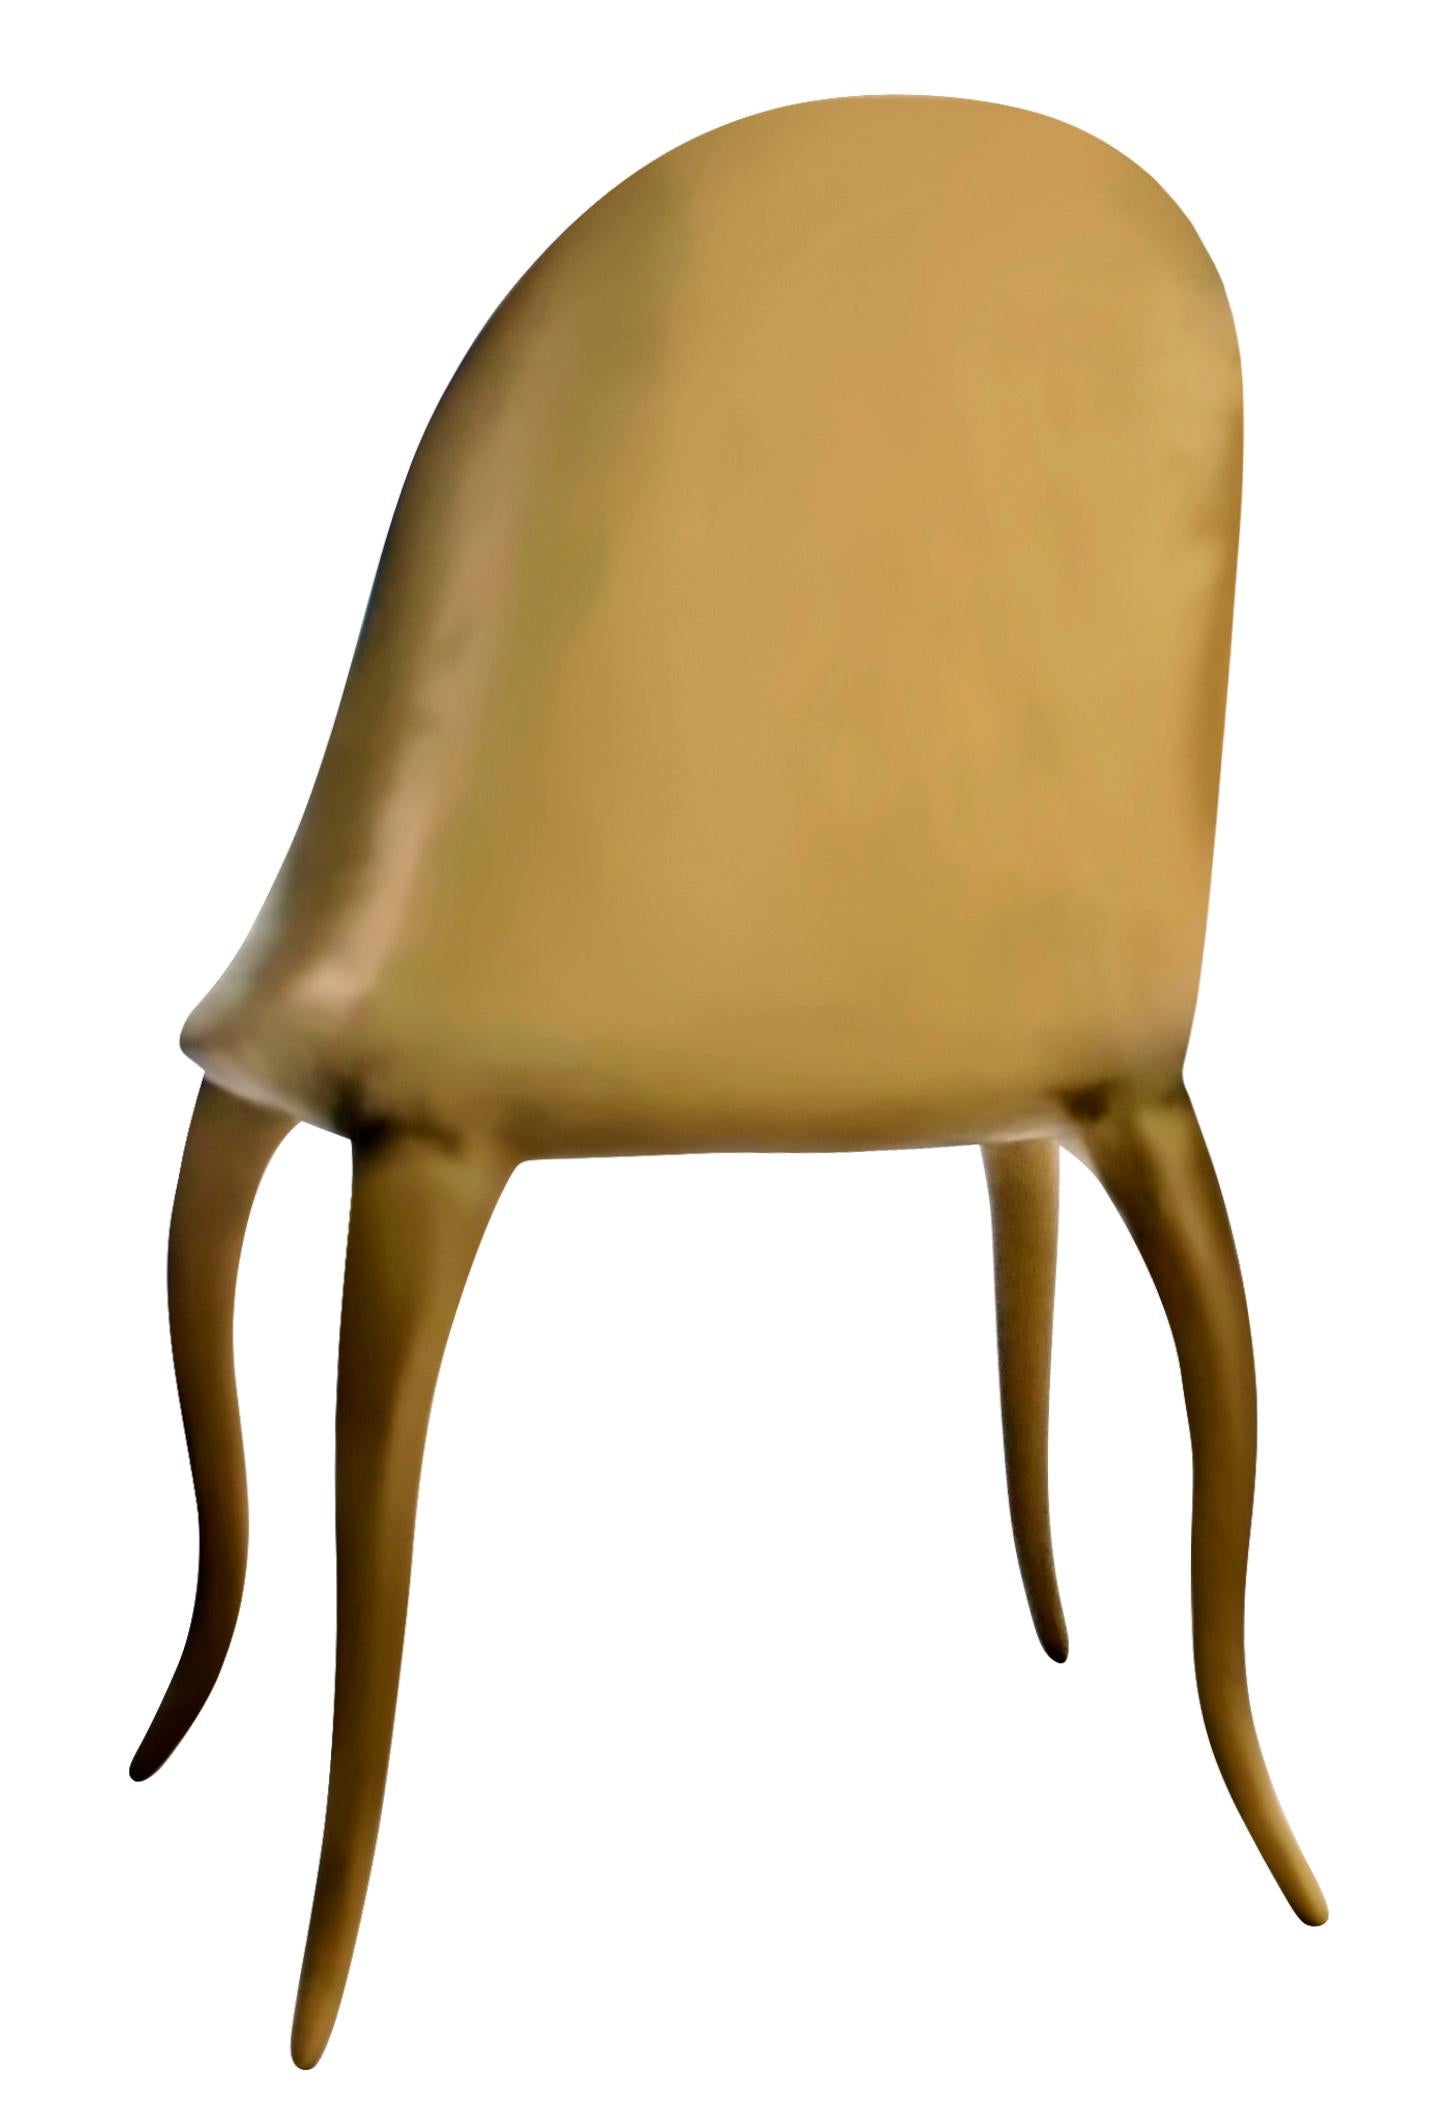 luxurious chair